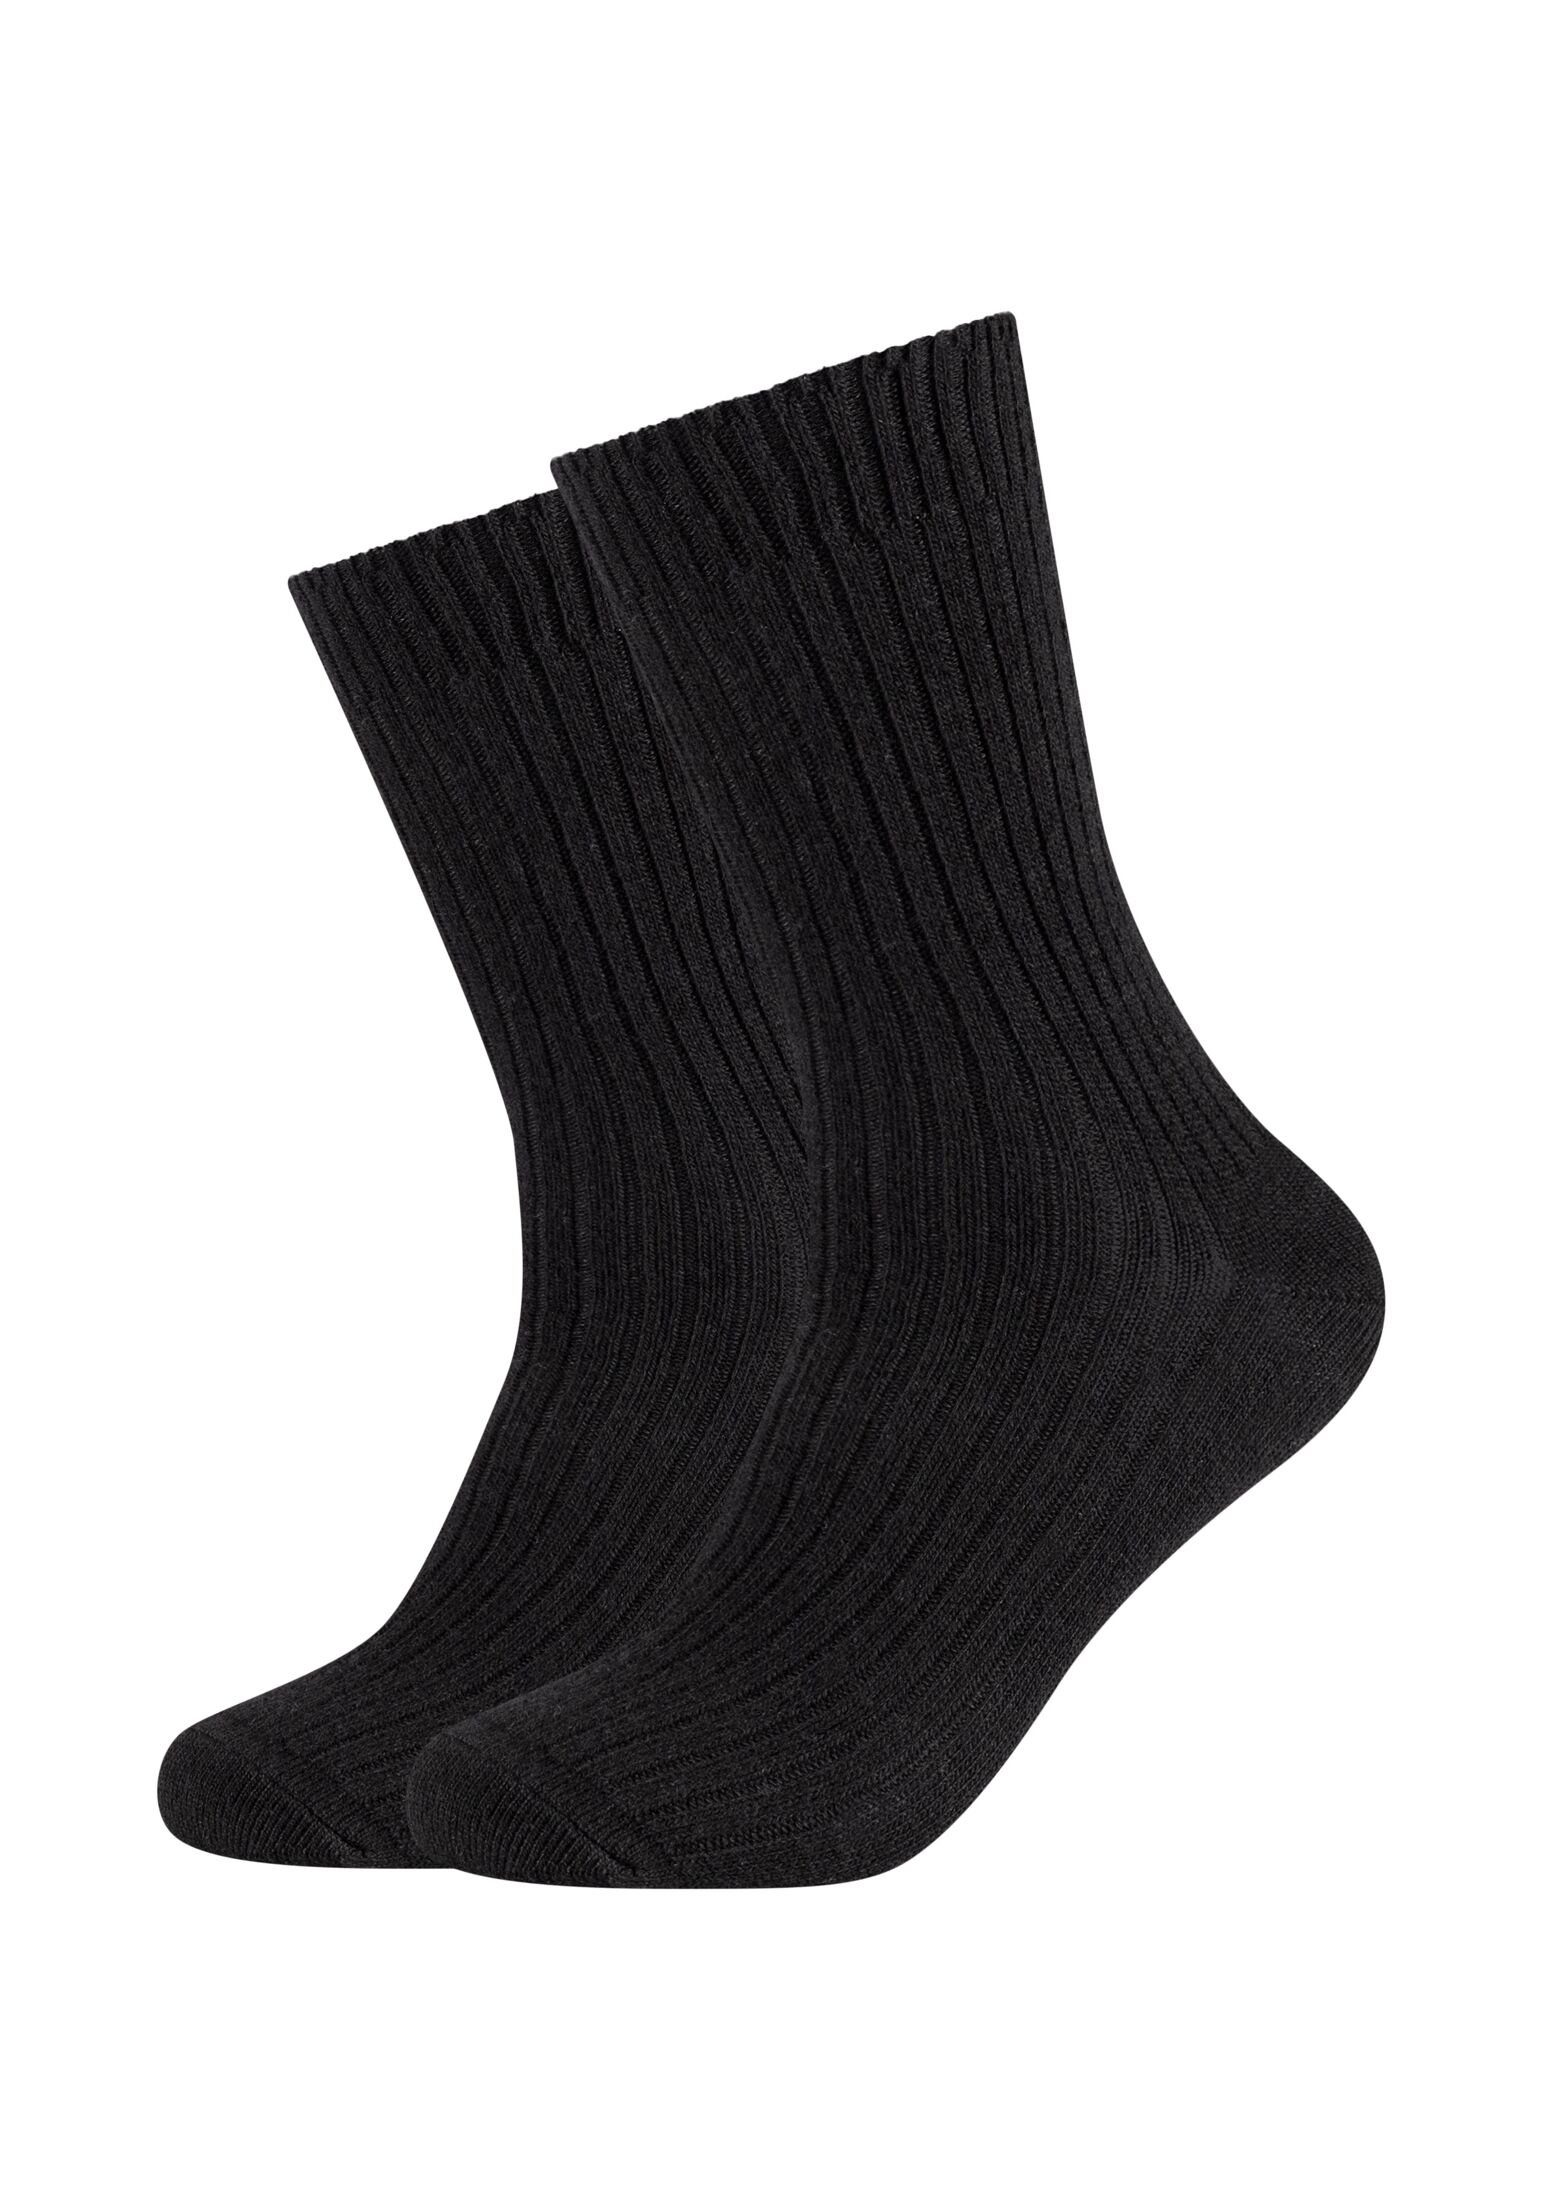 s.Oliver Socken Socken 2er Pack black | Lange Socken